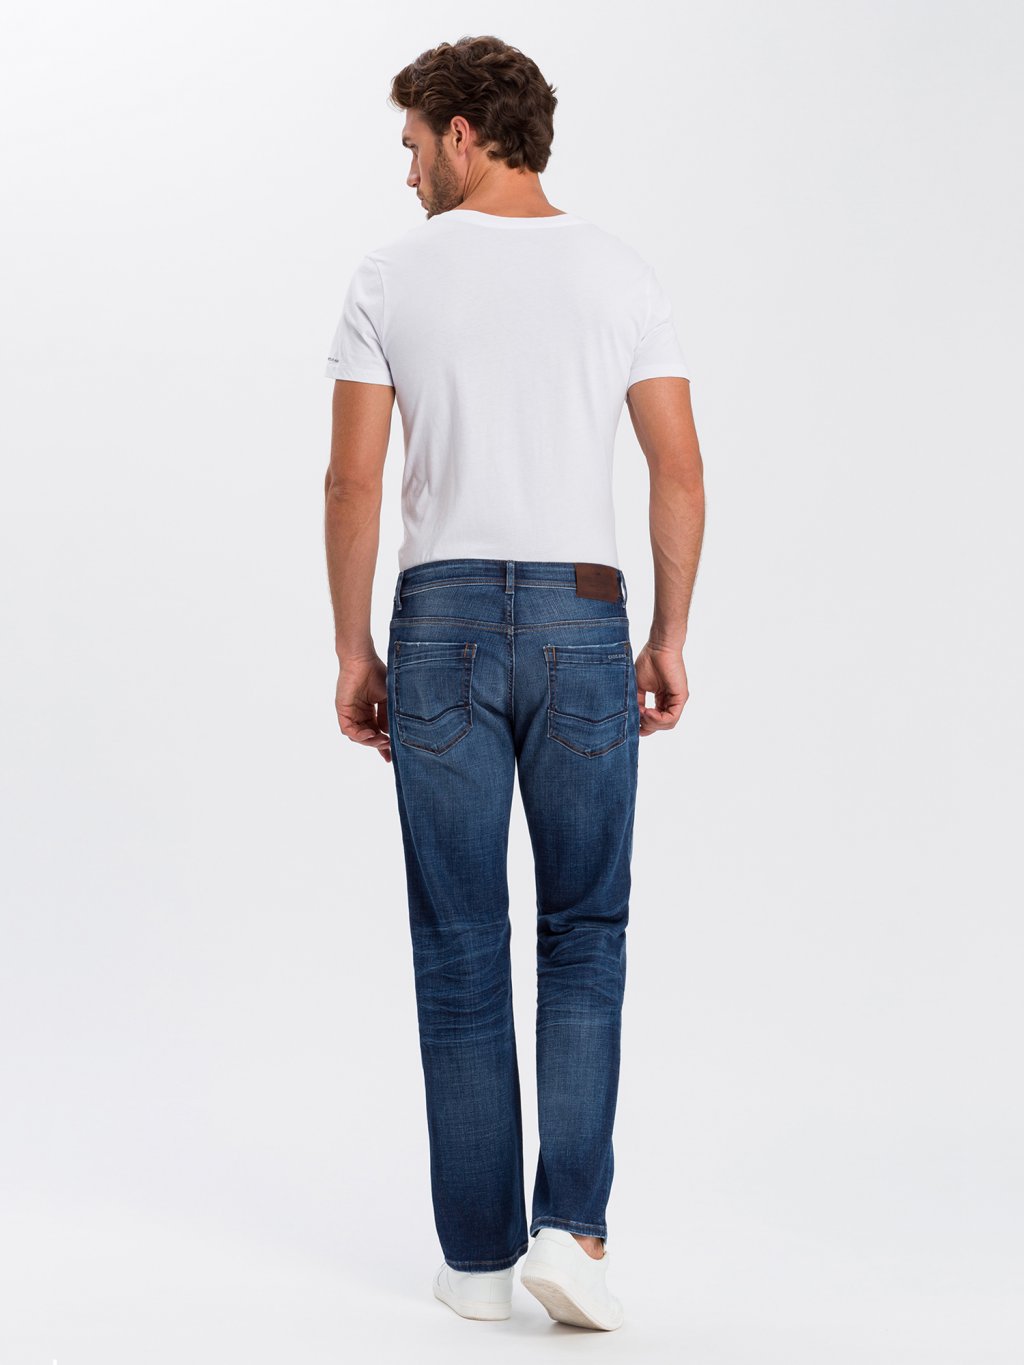 Cross jeans pánské džíny Antonio rovný střih E 161-132 modré - STORMfashion